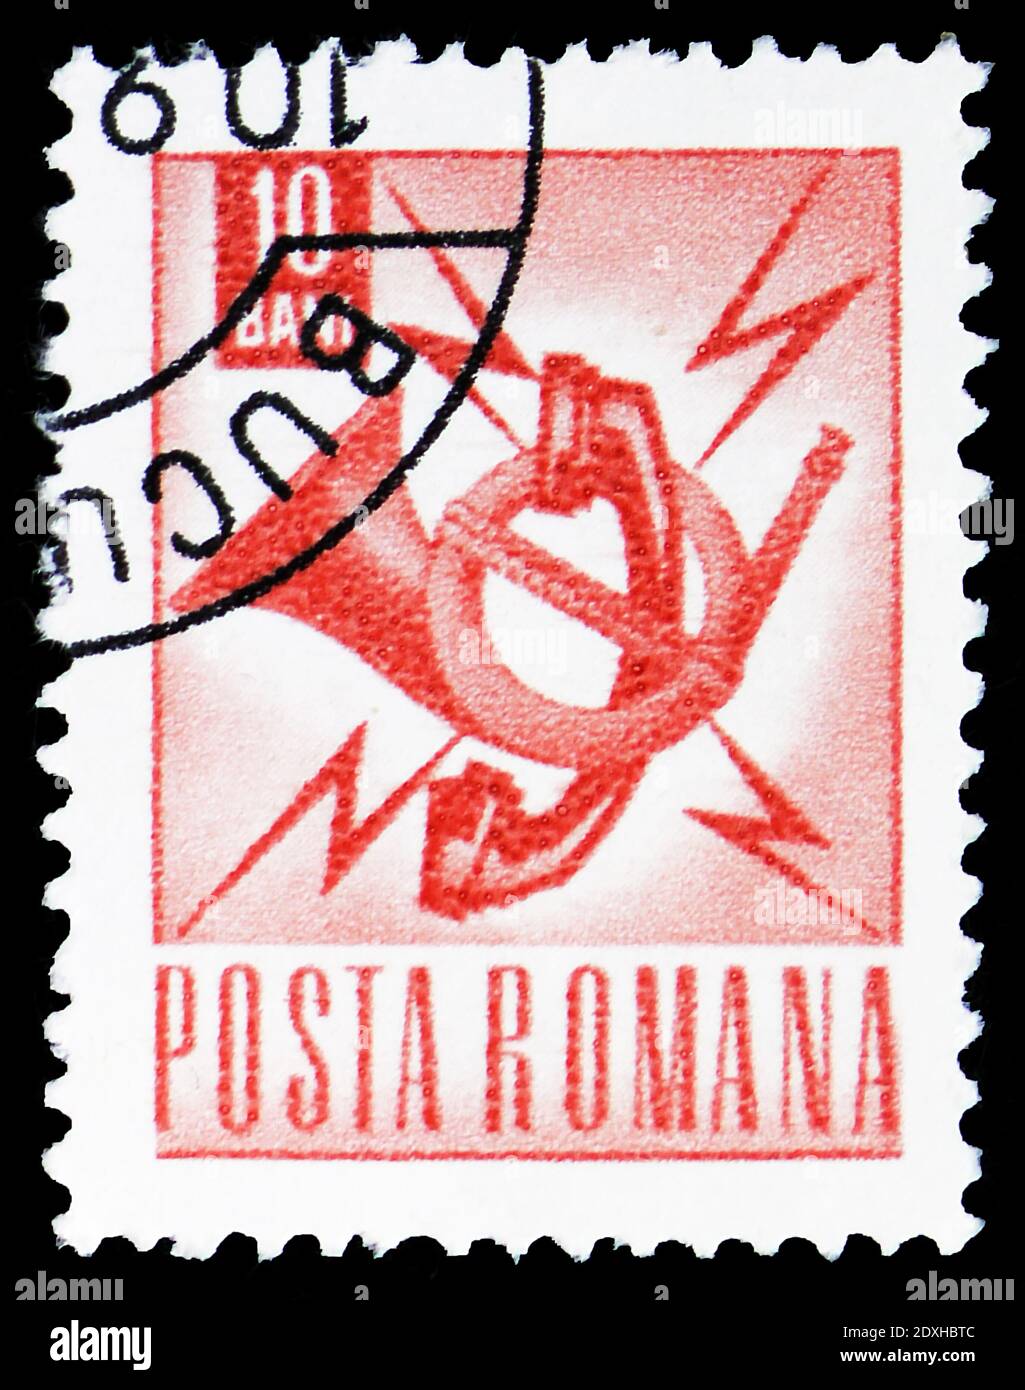 MOSCA, RUSSIA - 30 MARZO 2019: Un francobollo stampato in Romania mostra la serie Post Emblem, Postal and Transport, circa 1968 Foto Stock